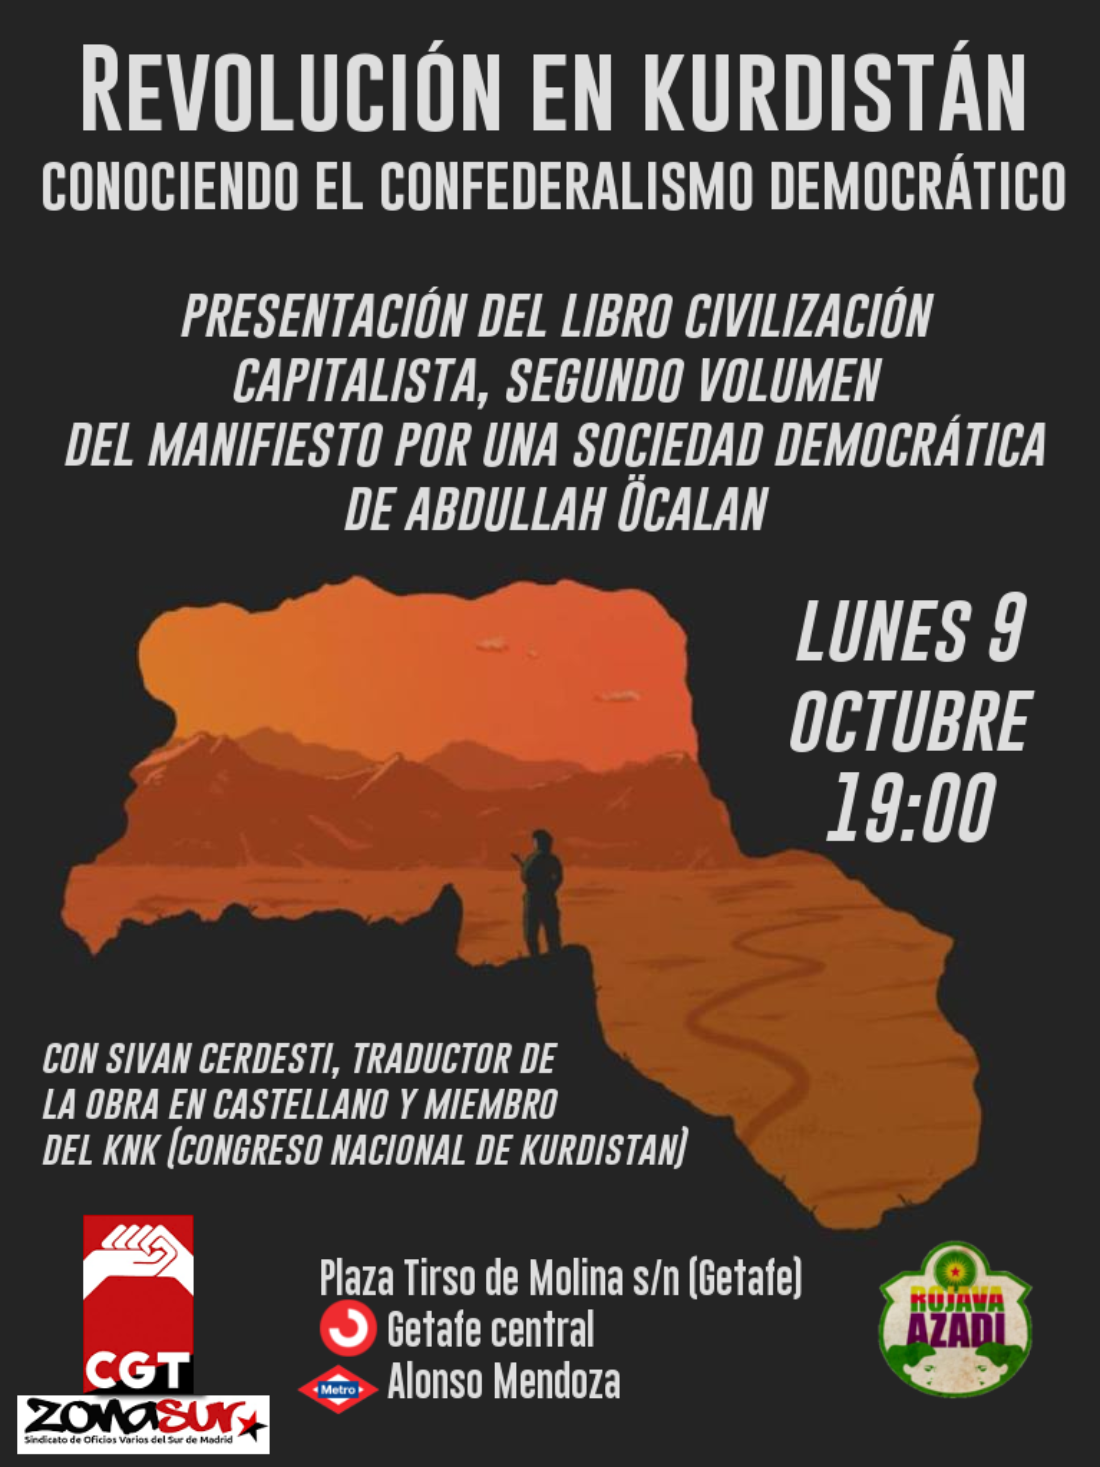 Domingo 8 y lunes 9 de octubre: Charla de presentación del libro “Civilización capitalista” en Madrid